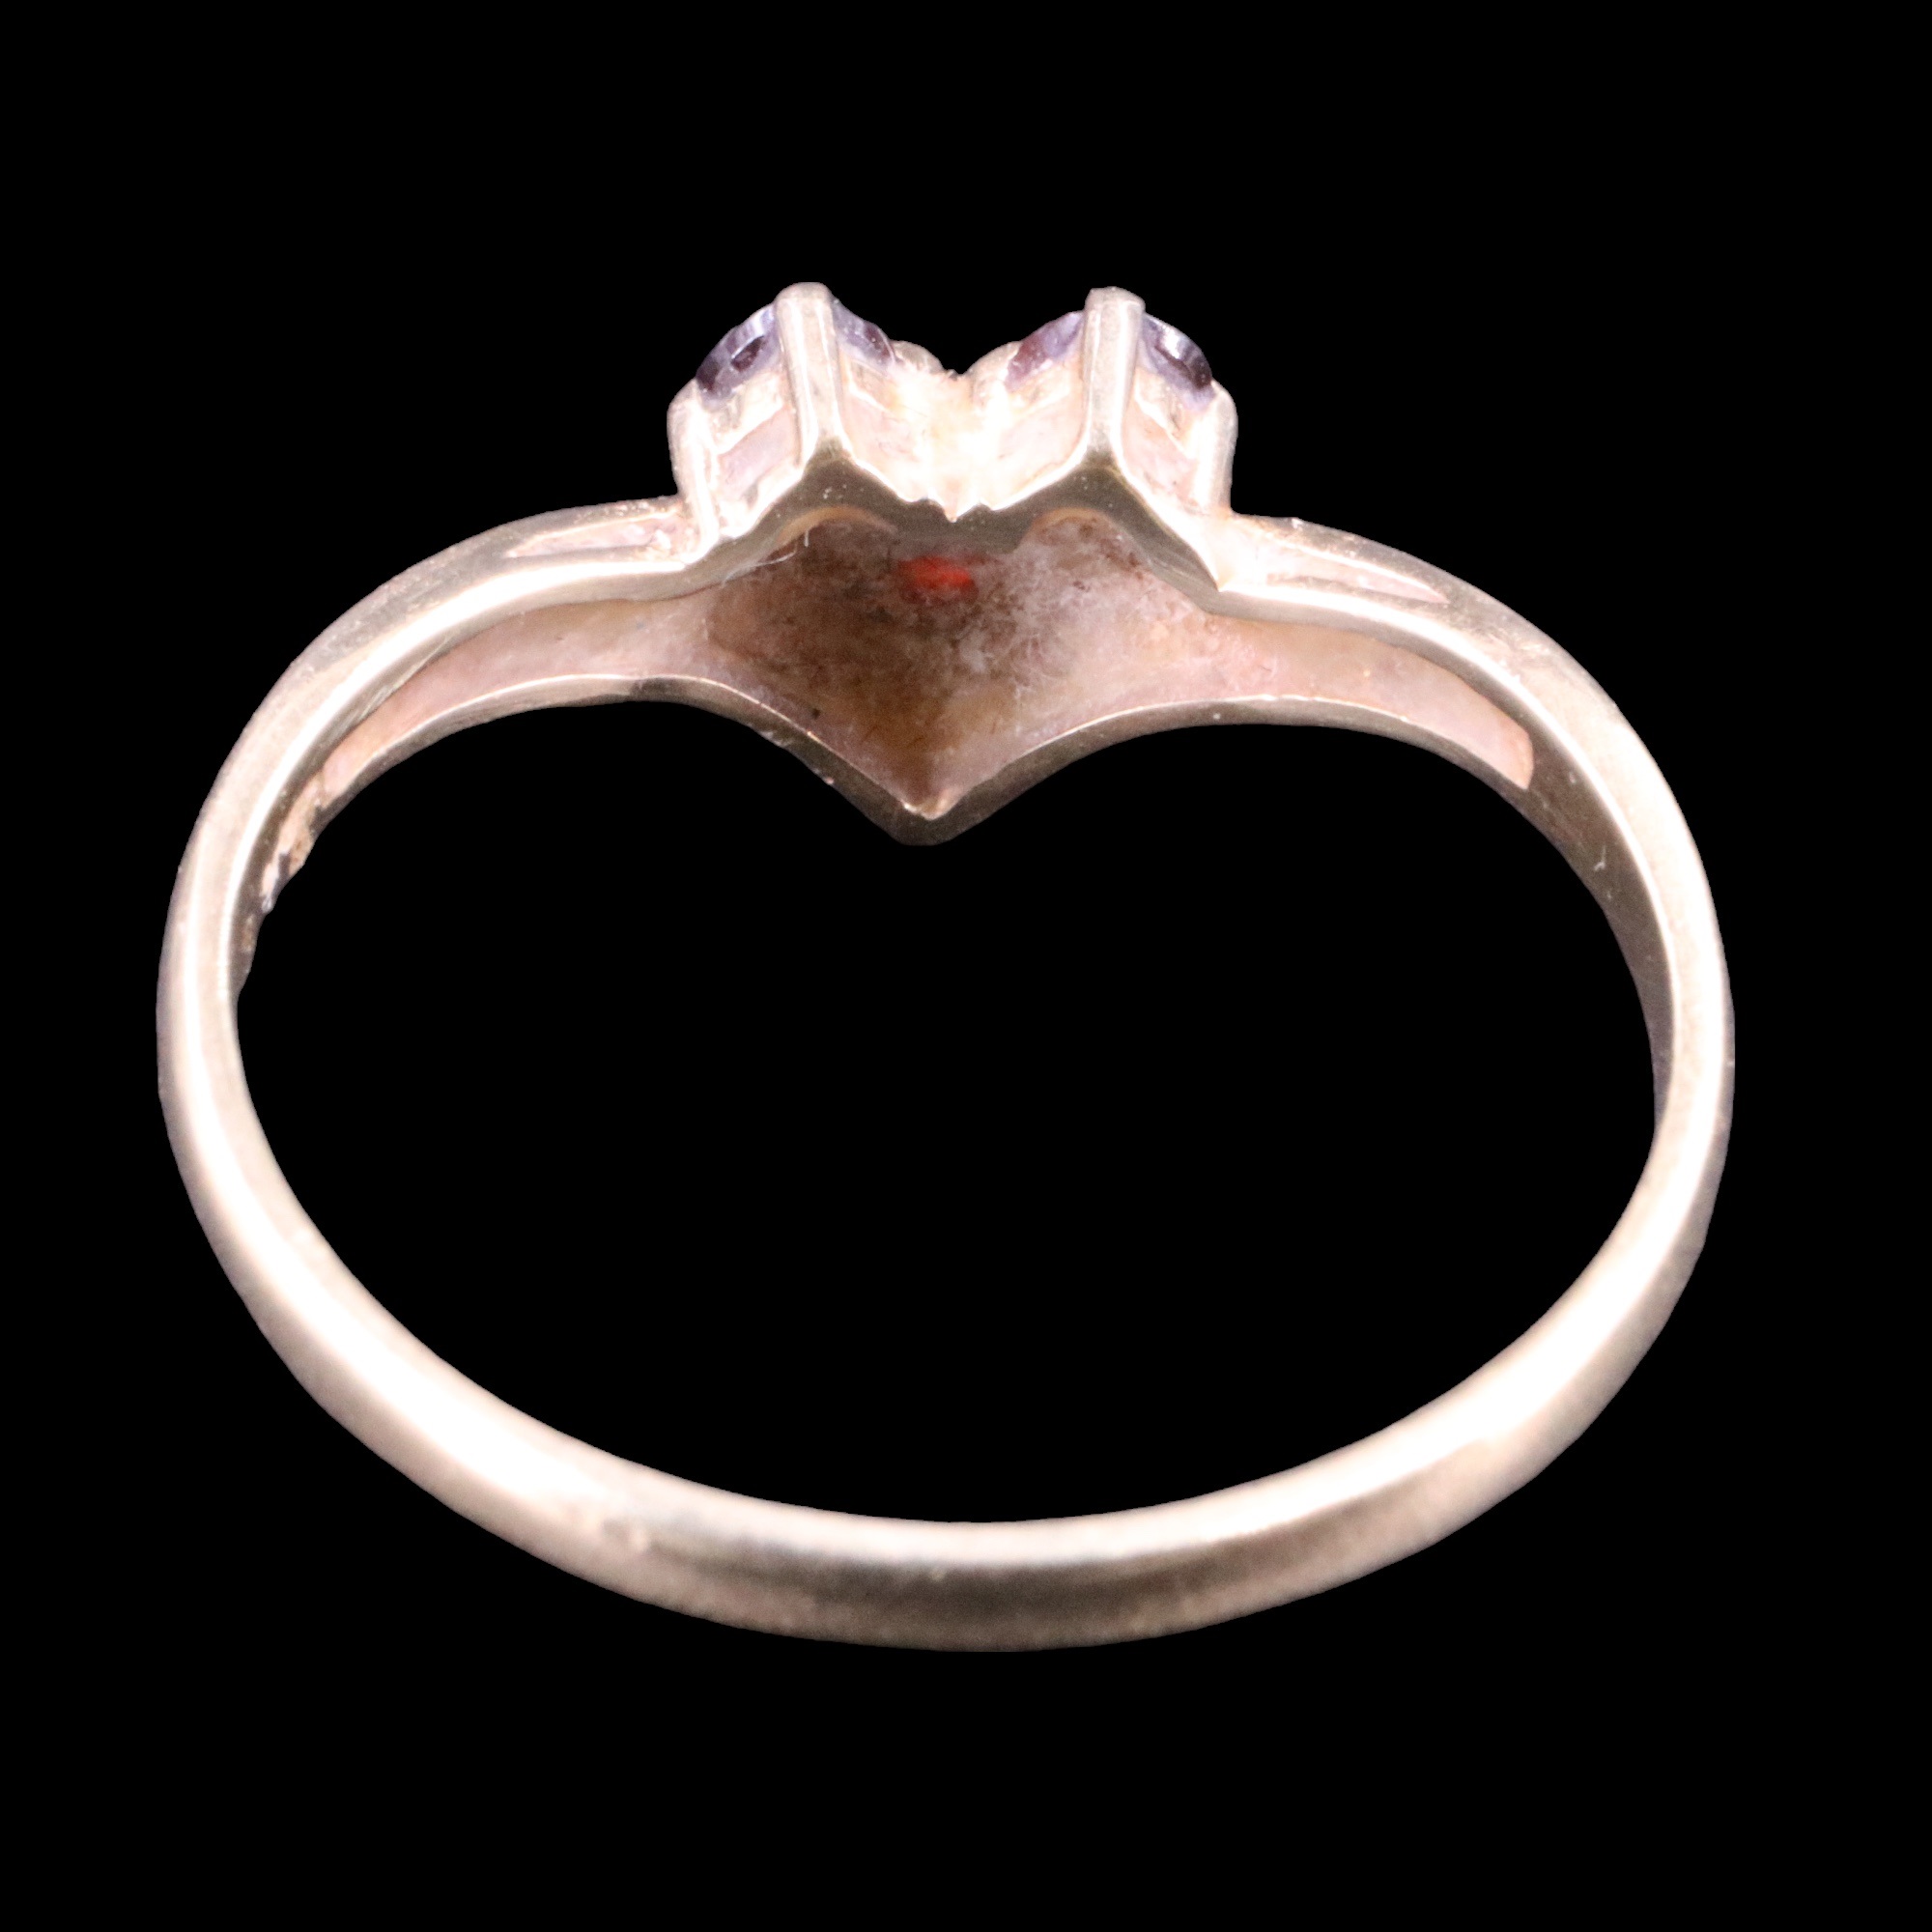 A garnet-set 9 ct gold wishbone ring, N, 1.3 g - Image 3 of 4